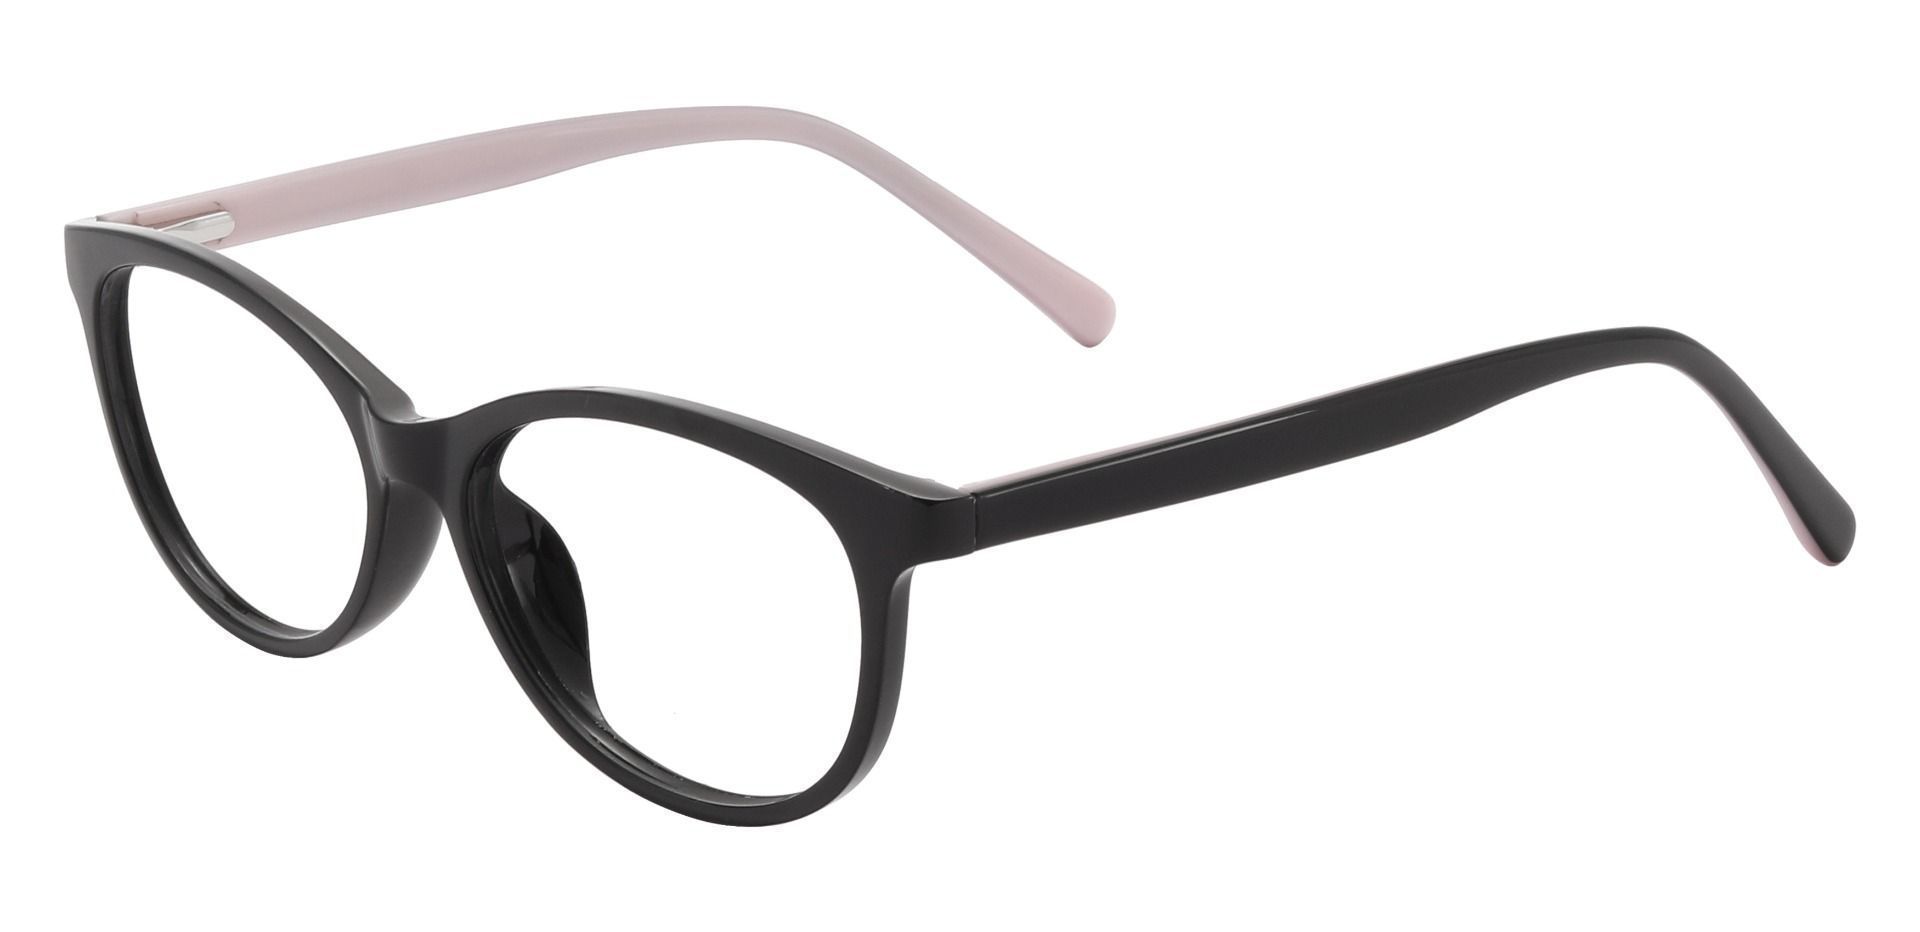 Adora Oval Prescription Glasses - Black